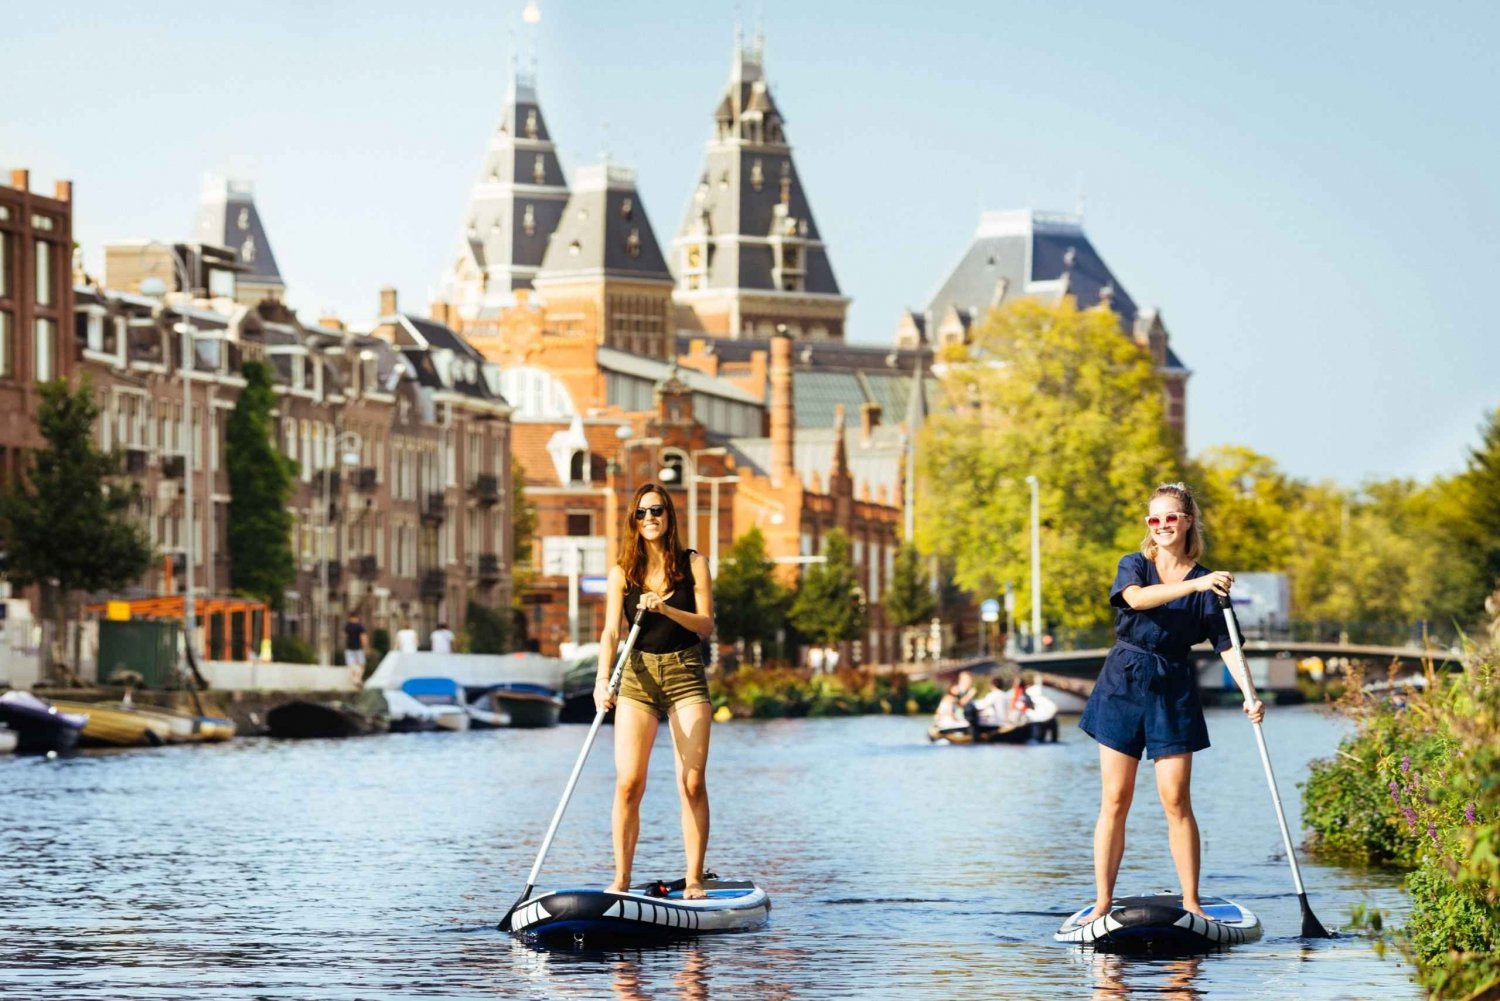 Amsterdam: Wypożycz deskę SUP i odkrywaj amsterdamskie kanały